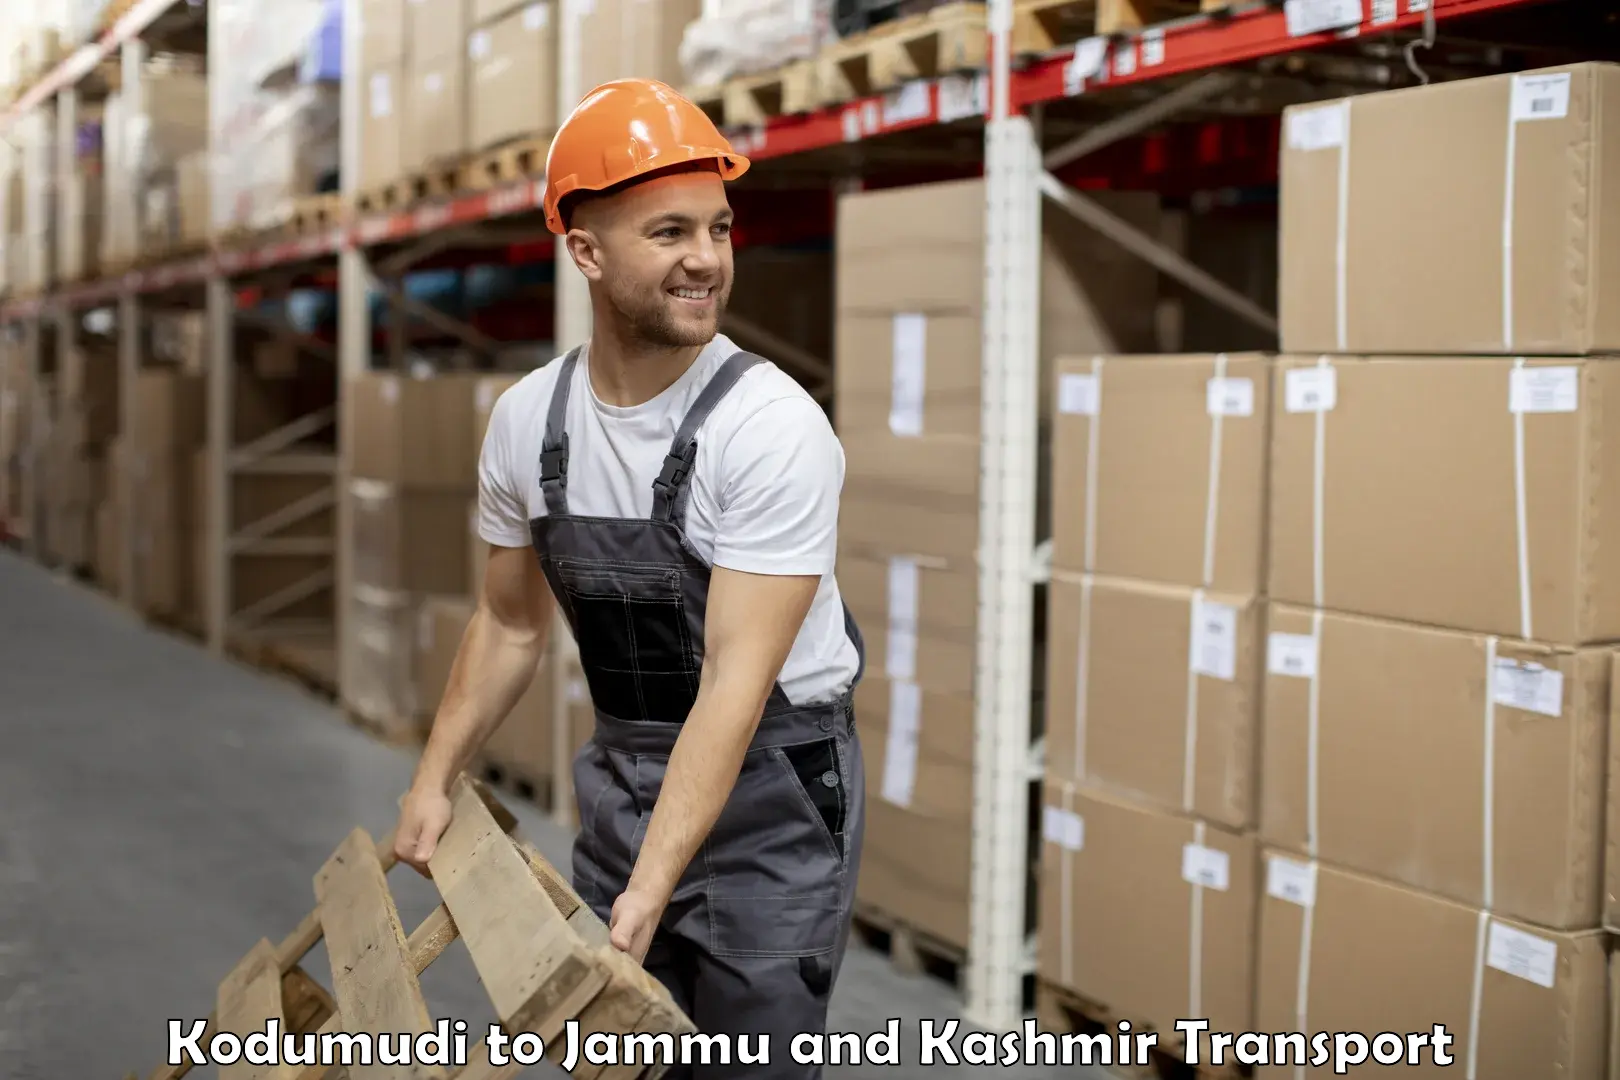 International cargo transportation services Kodumudi to Kargil